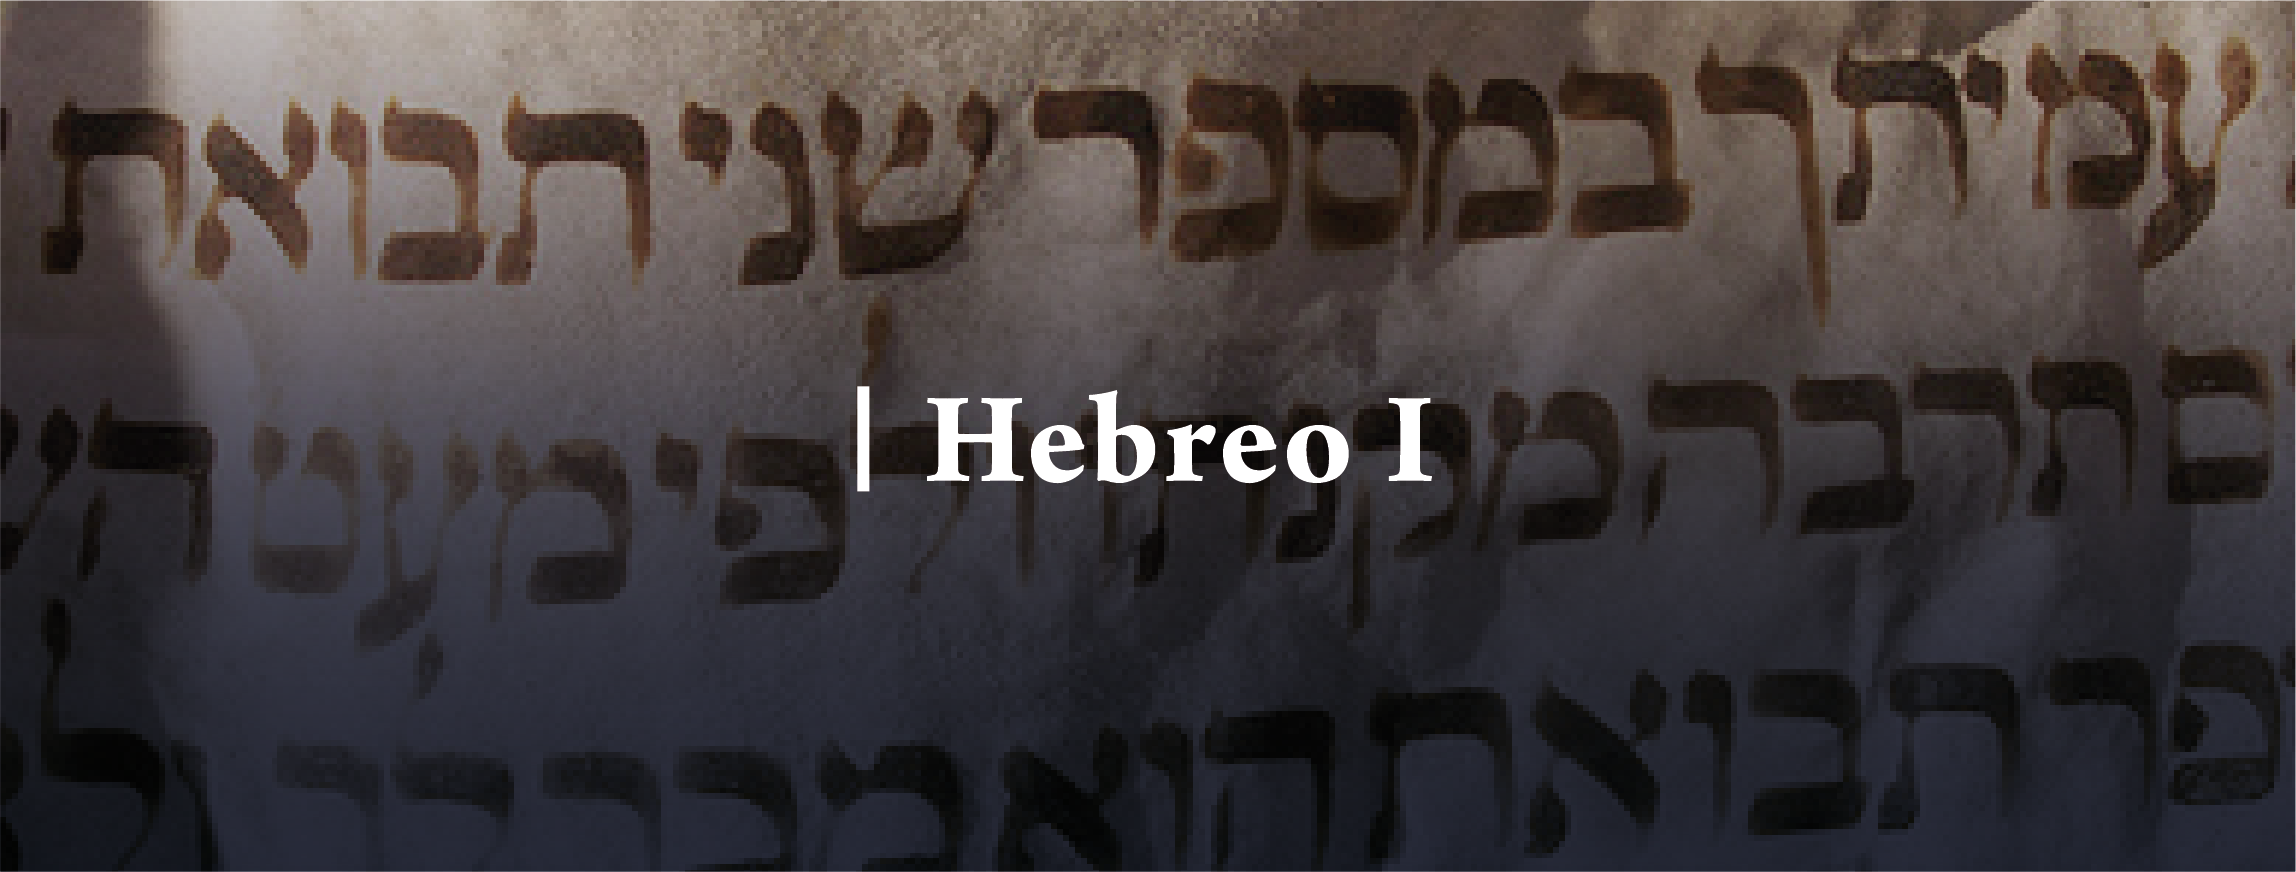 Hebreo 1 